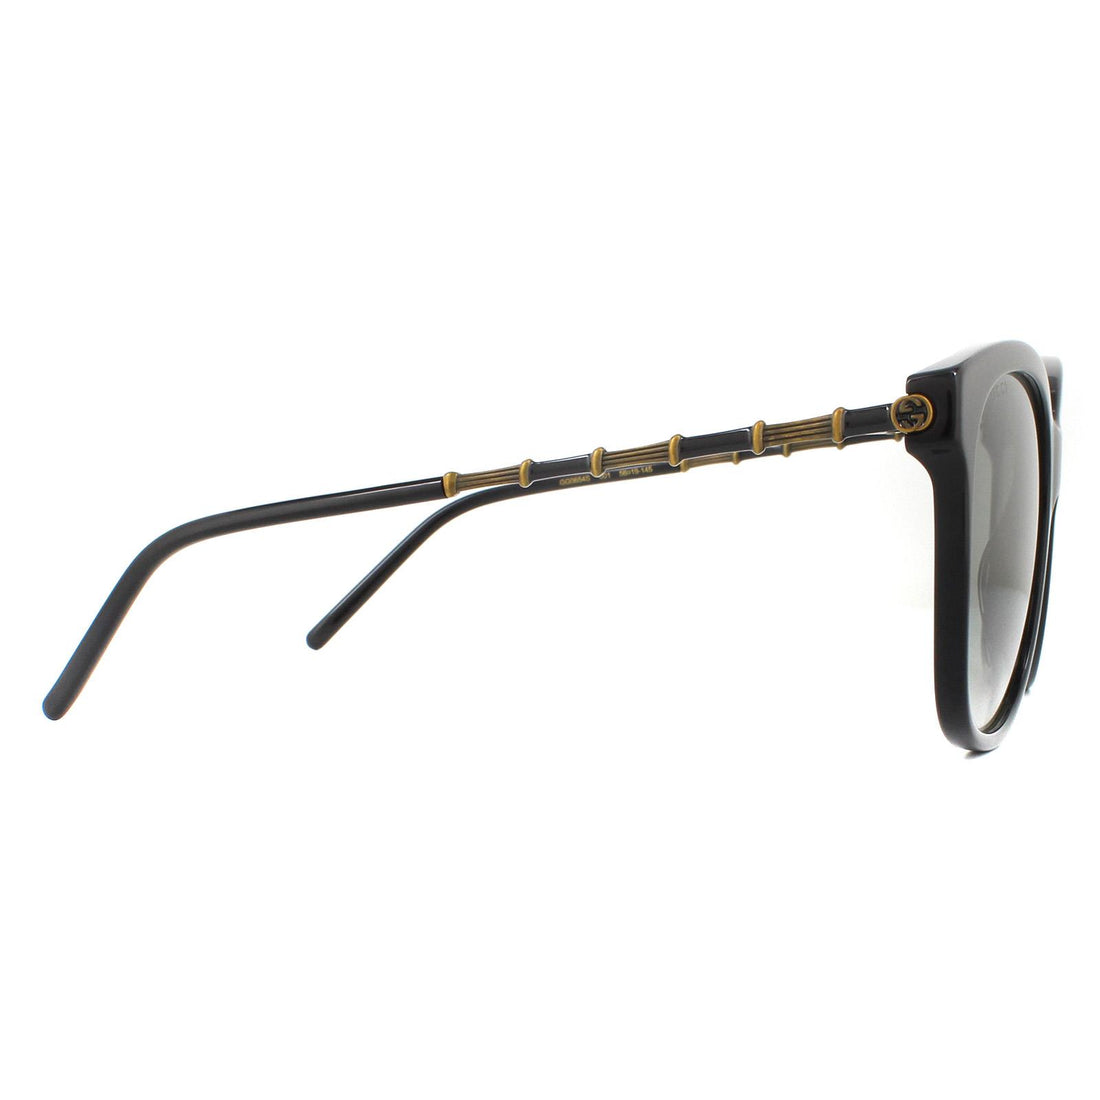 Gucci Sunglasses GG0654S 001 Black Grey Gradient